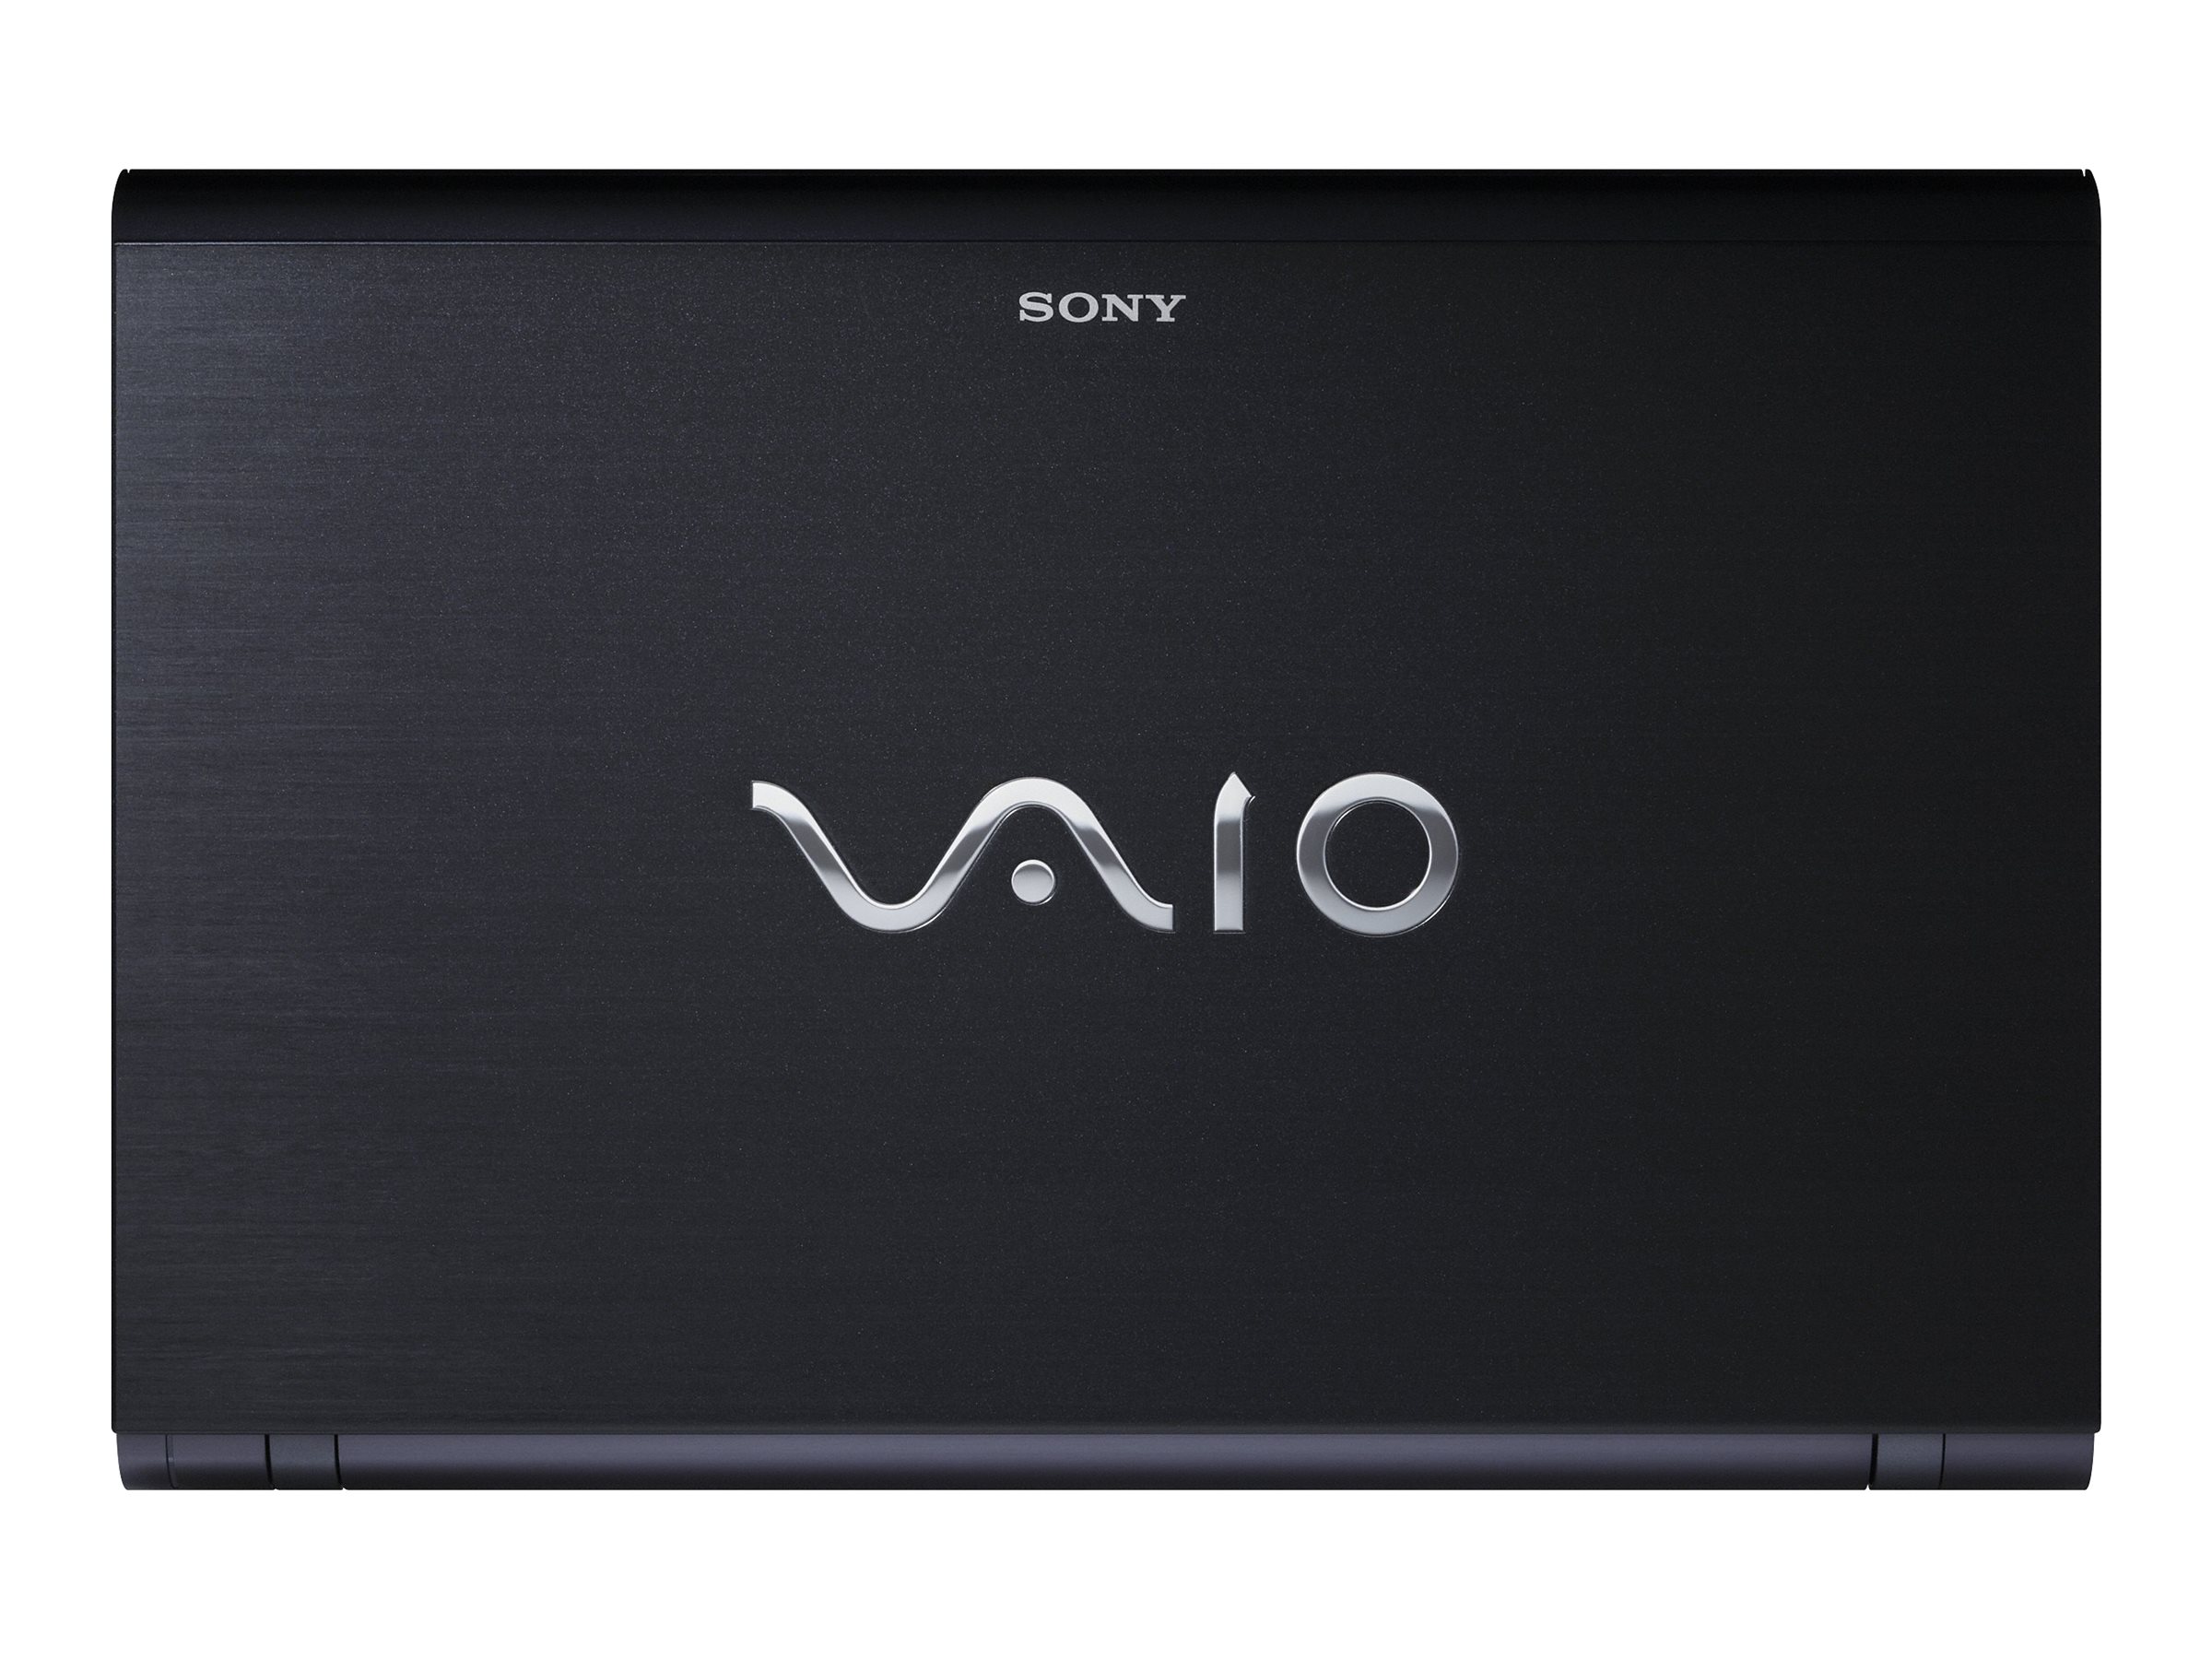 Sony VAIO Z Series VPC-Z11CGX/X - Core i5 540M / 2.53 GHz - Win 7 Pro  64-bit - 4 GB RAM - 256 GB SSD - DVD SuperMulti DL - 13.1